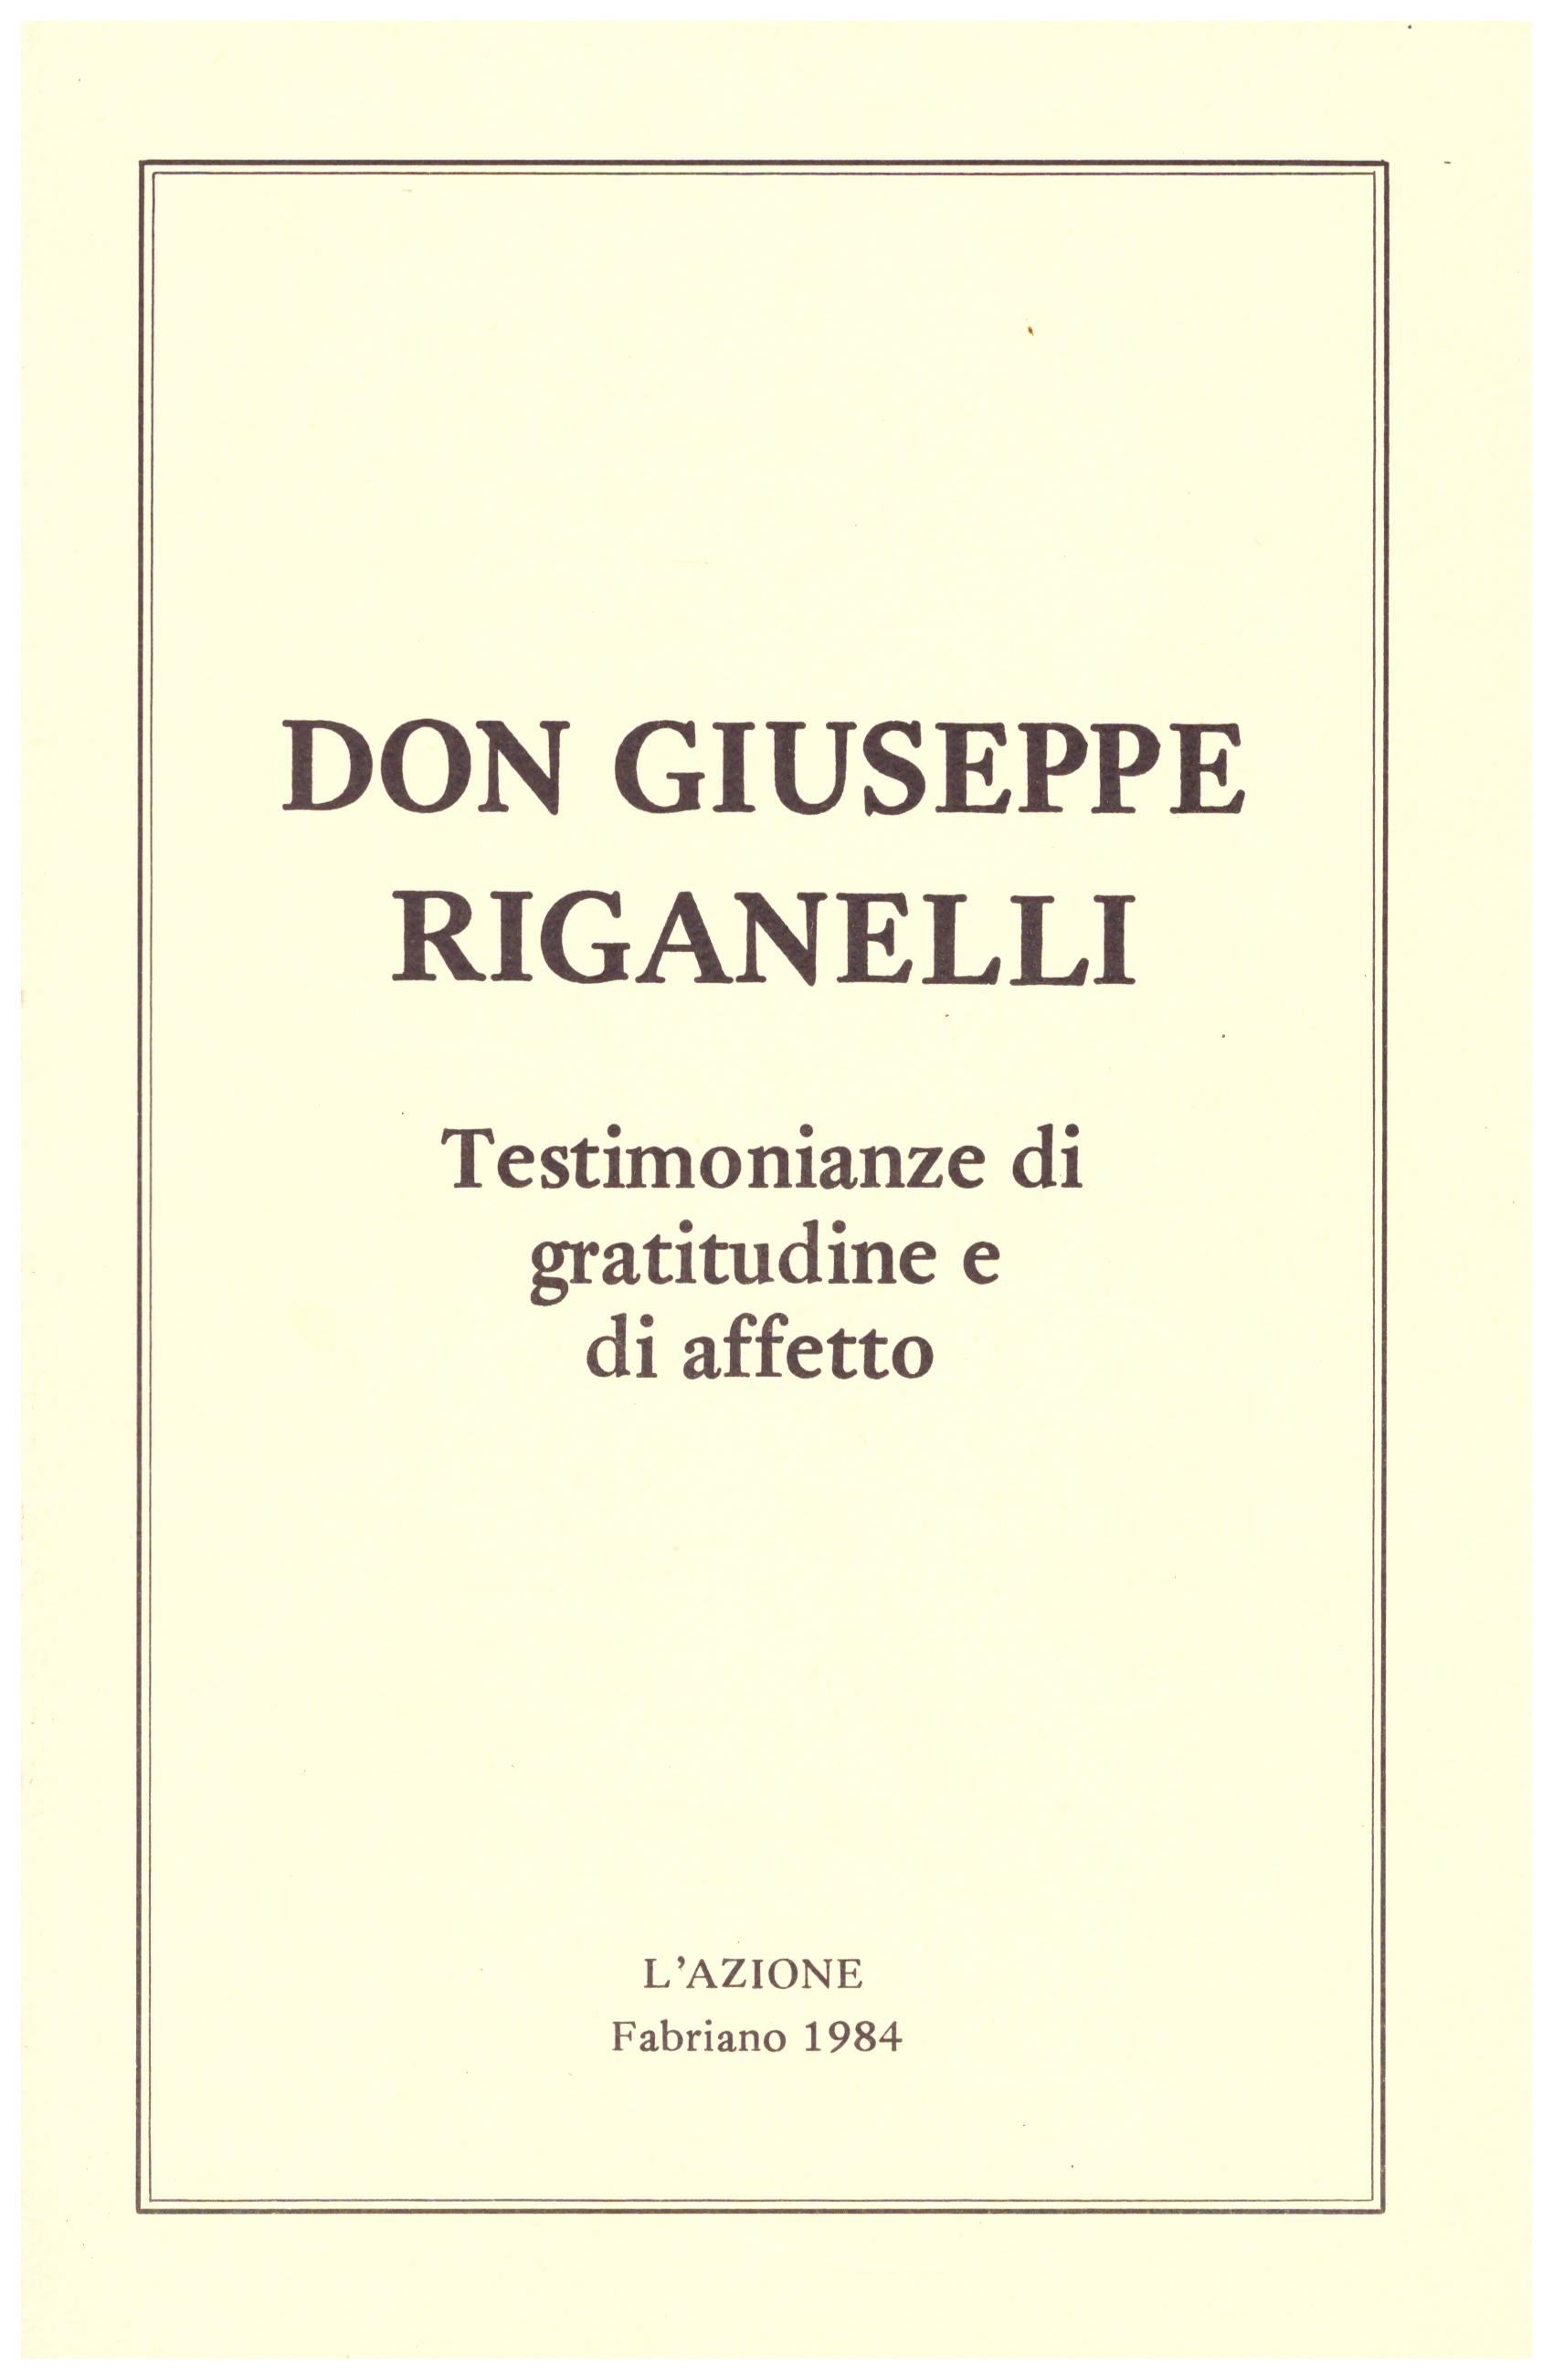 Titolo: Don Giuseppe Riganelli Autore : AA.VV.  Editore: L'AZIONE Fabriano 1984